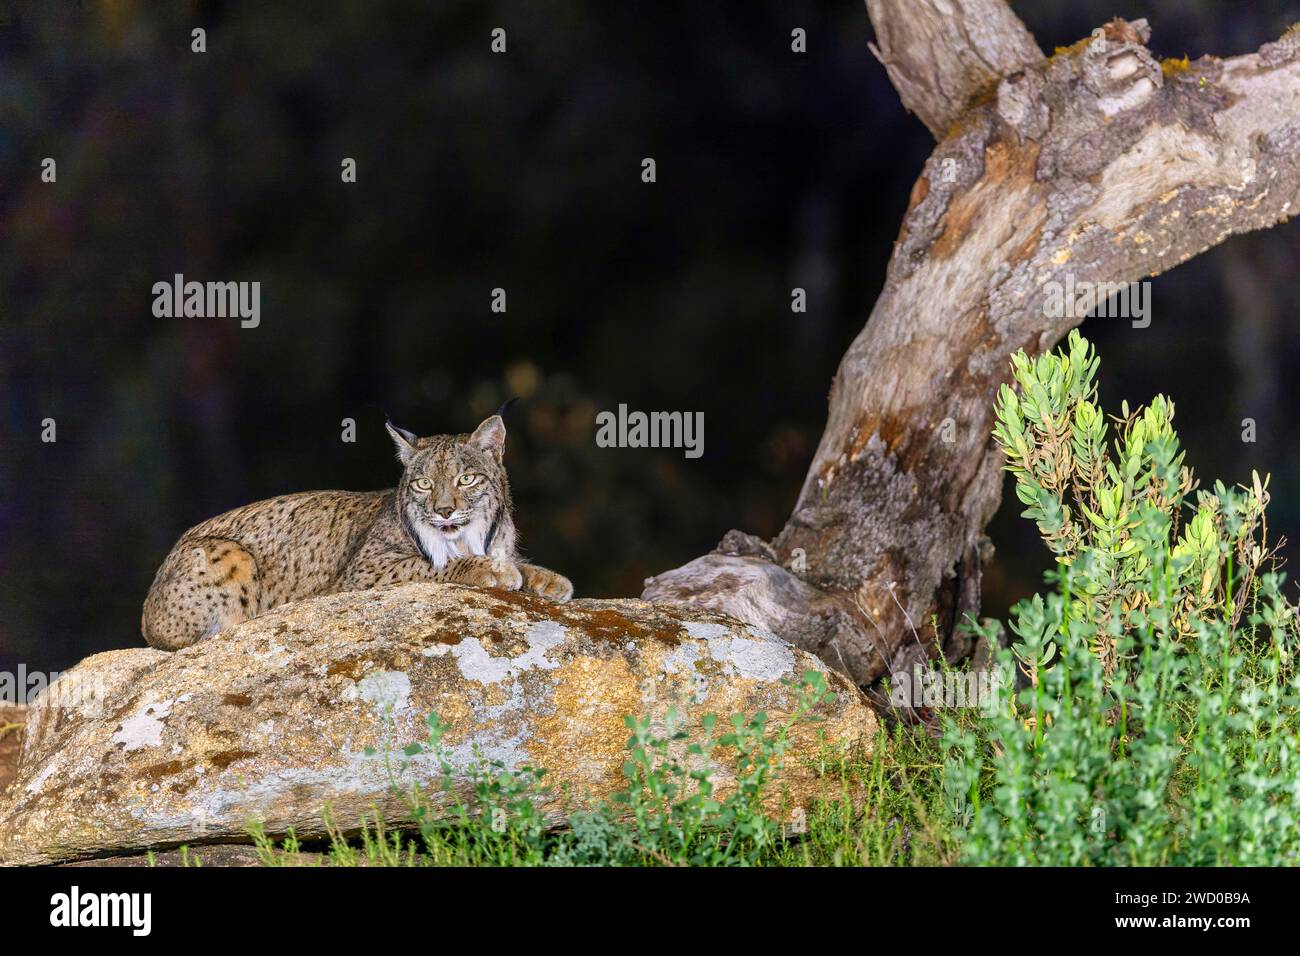 Der iberische Luchs (Lynx pardinus) liegt auf einem Felsen neben einem toten Baum im Dunkeln, Spanien, Andalusien, Andujar, Sierra de Andujar Nationalpark Stockfoto